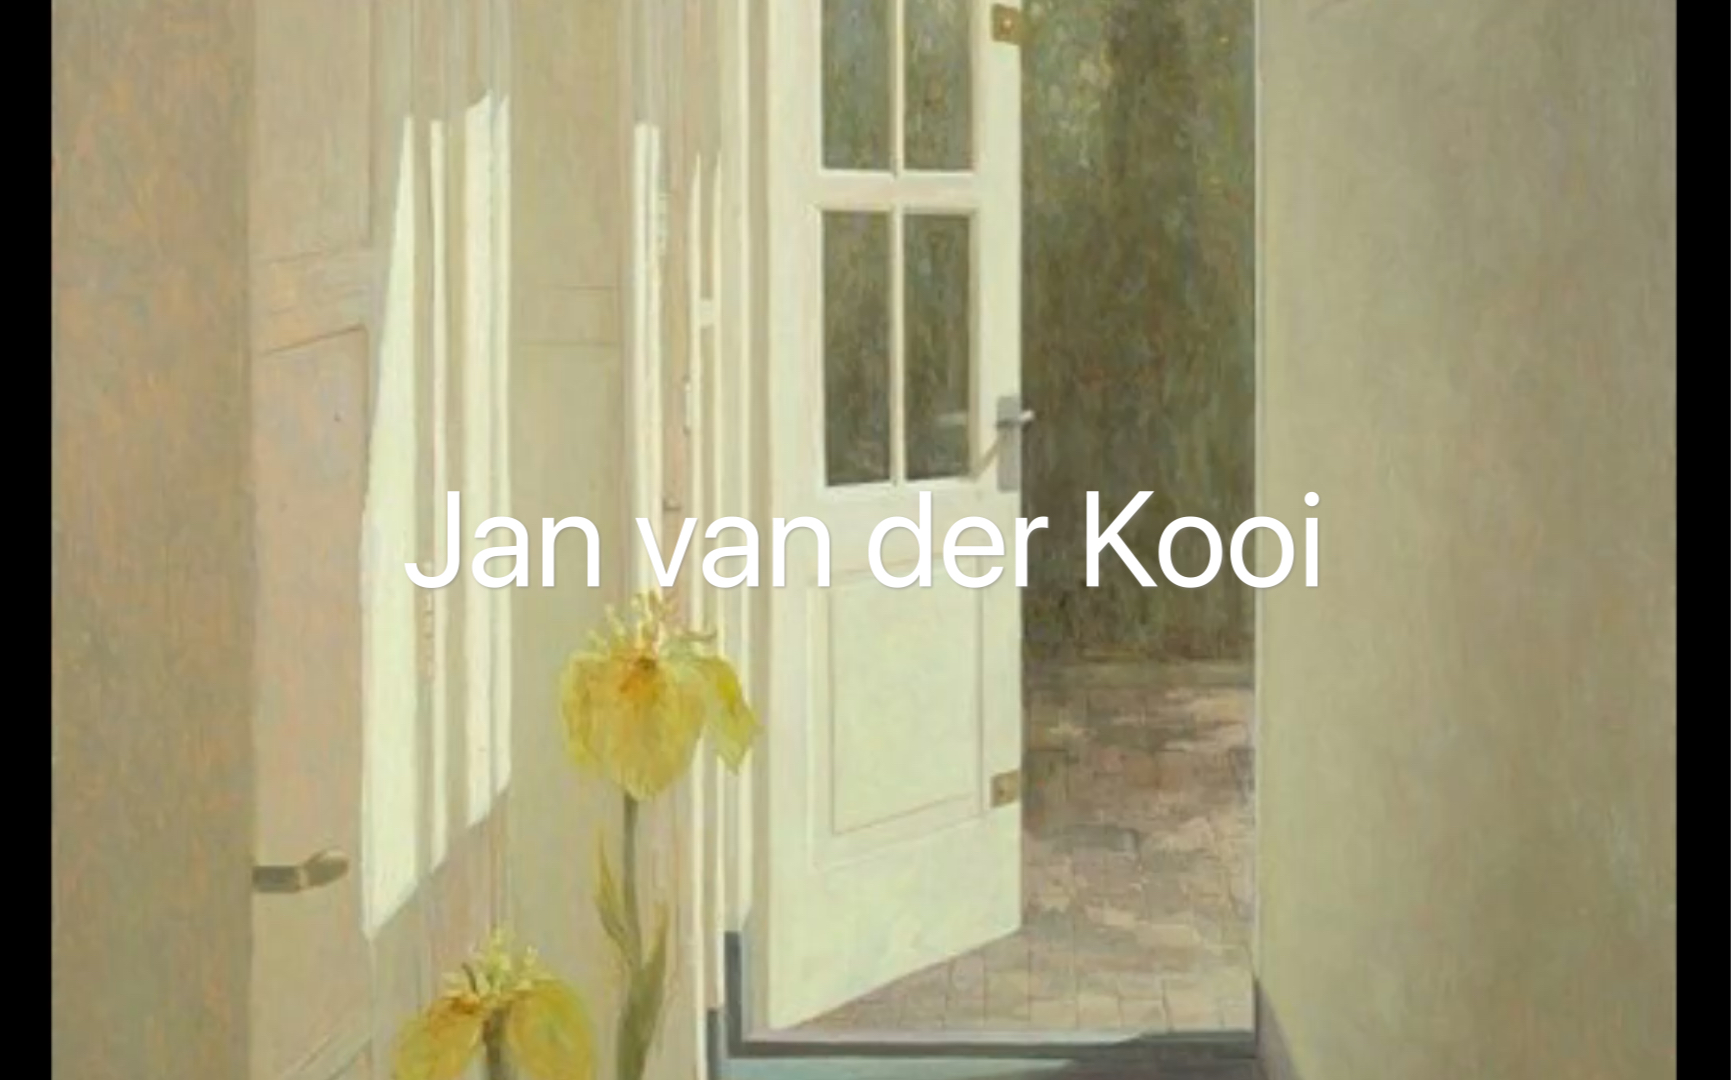 Jan van der Kooi｜他的画里有阳光的味道｜不动声色的美好-哔哩哔哩